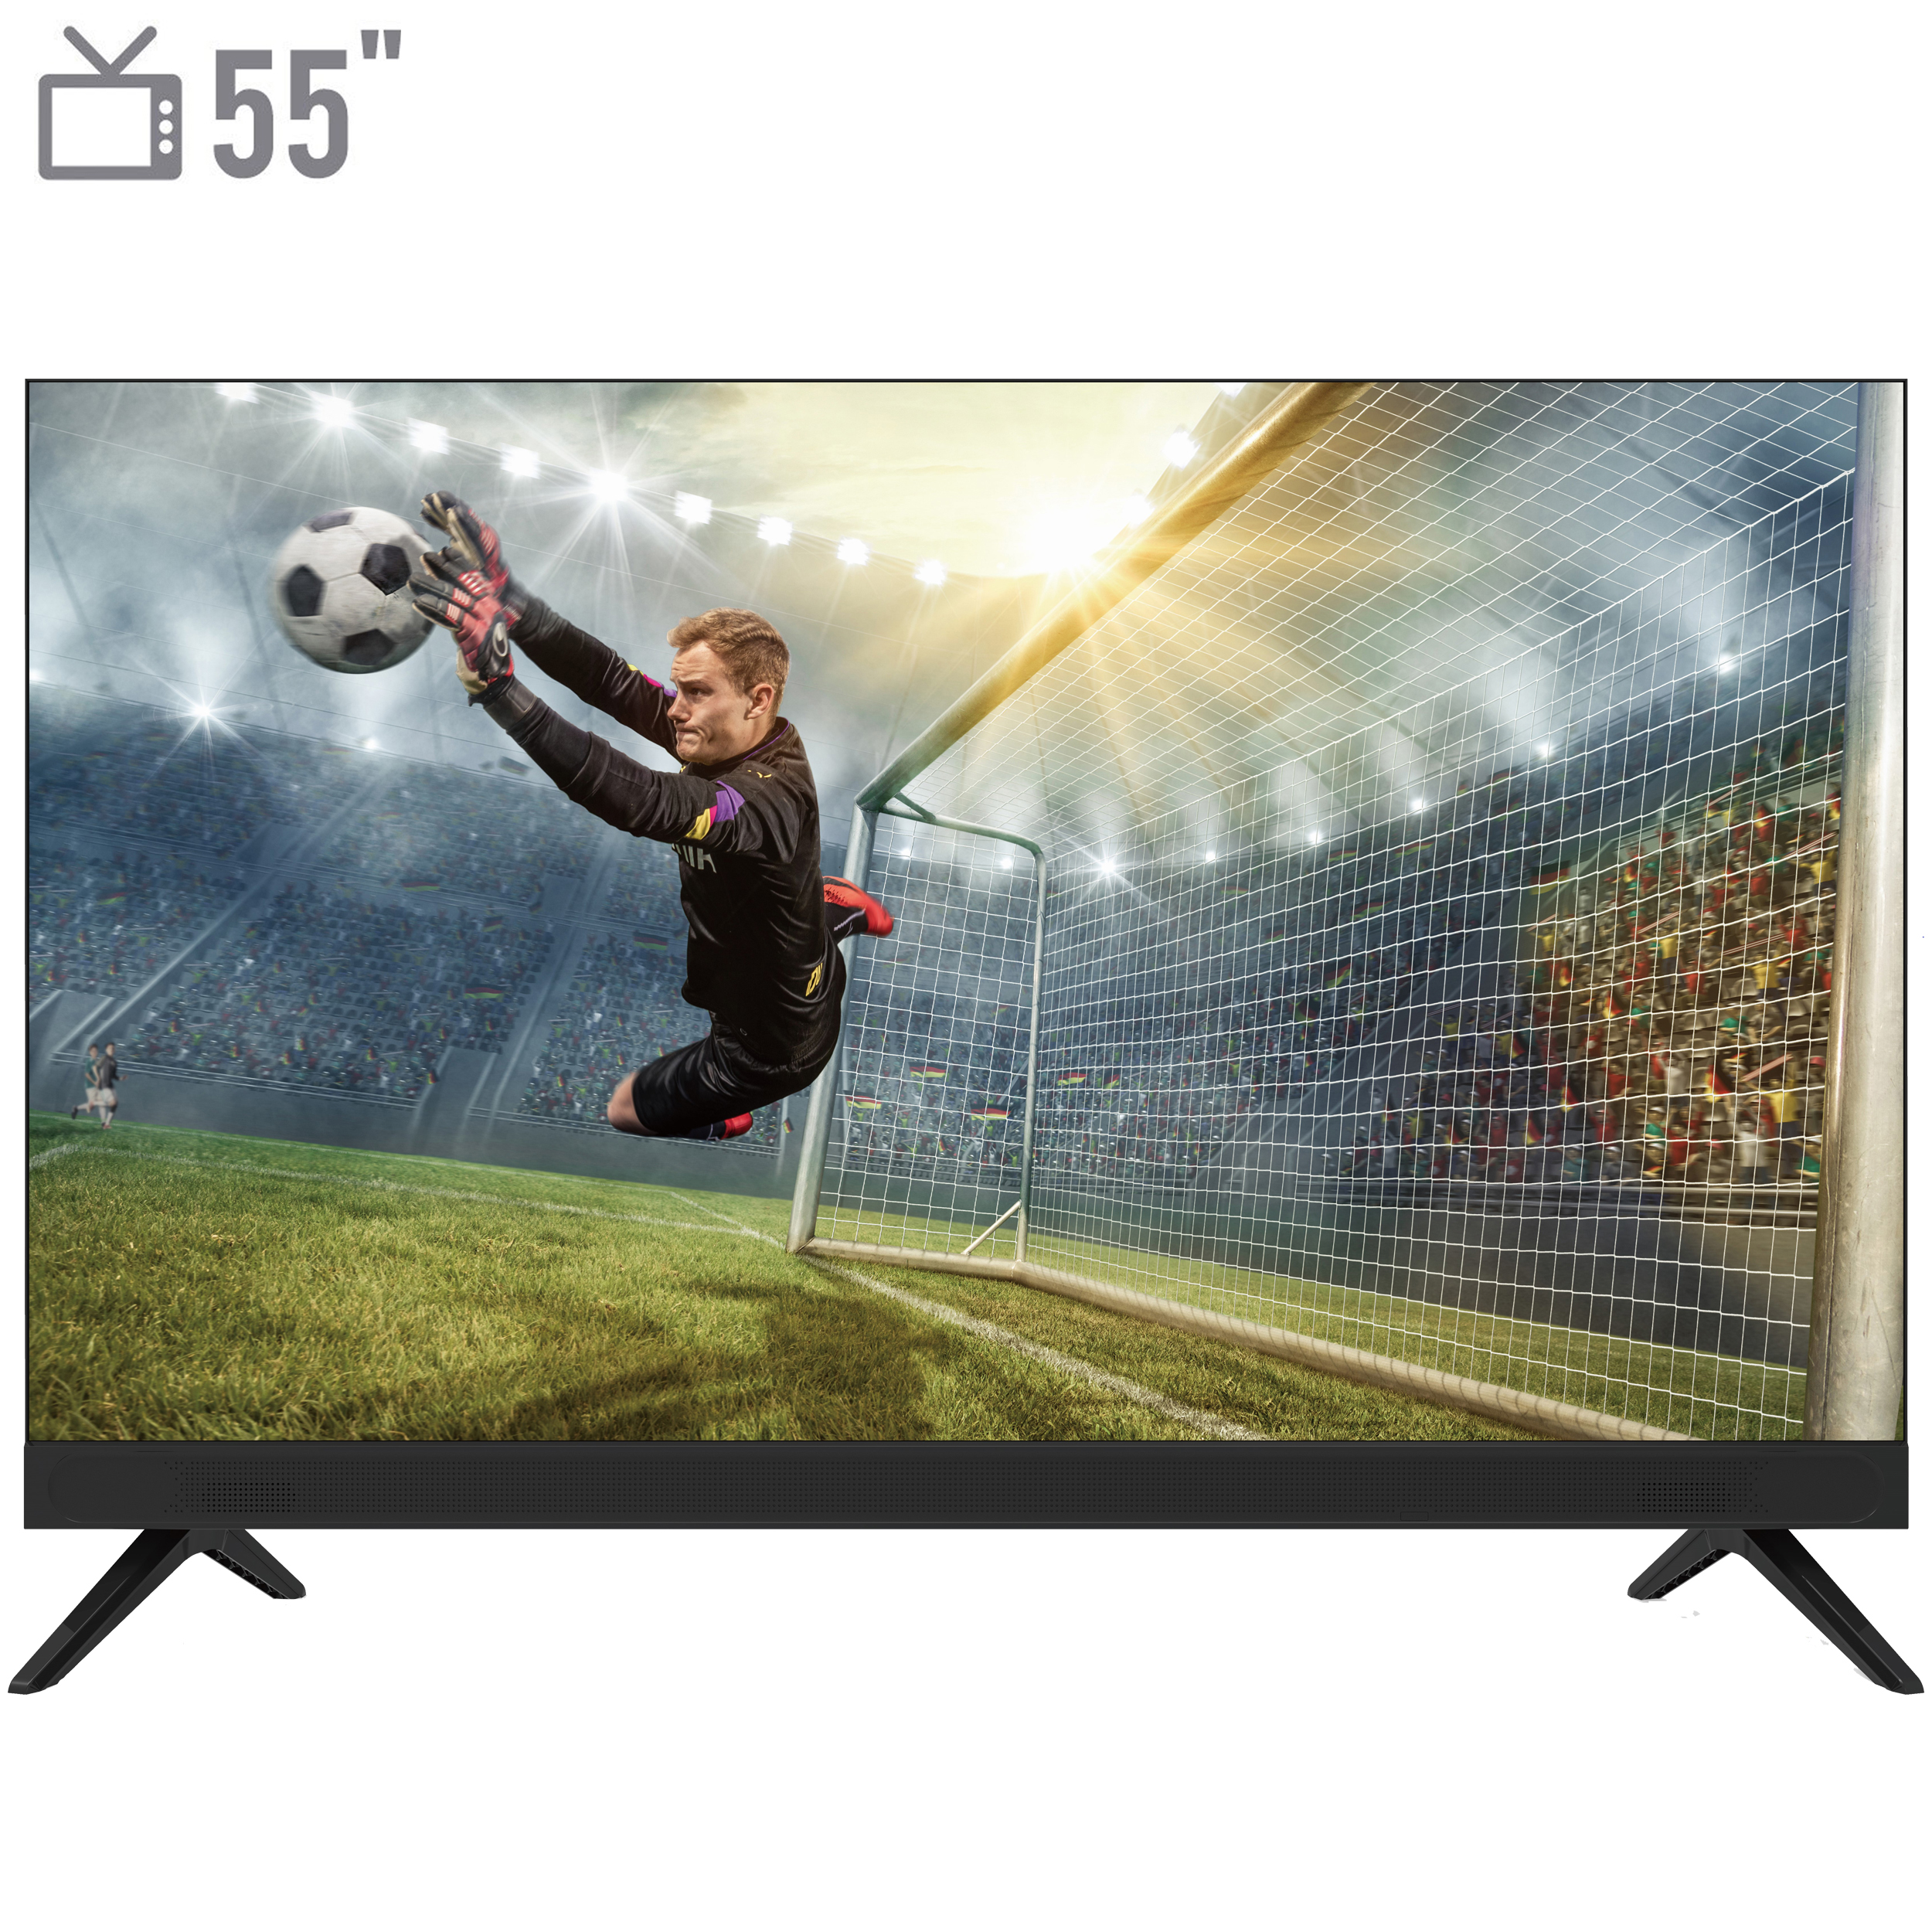 نکته خرید - قیمت روز تلویزیون ال ای دی هوشمند بویمن مدل 55KAE6800UWS سایز 55 اینچ خرید